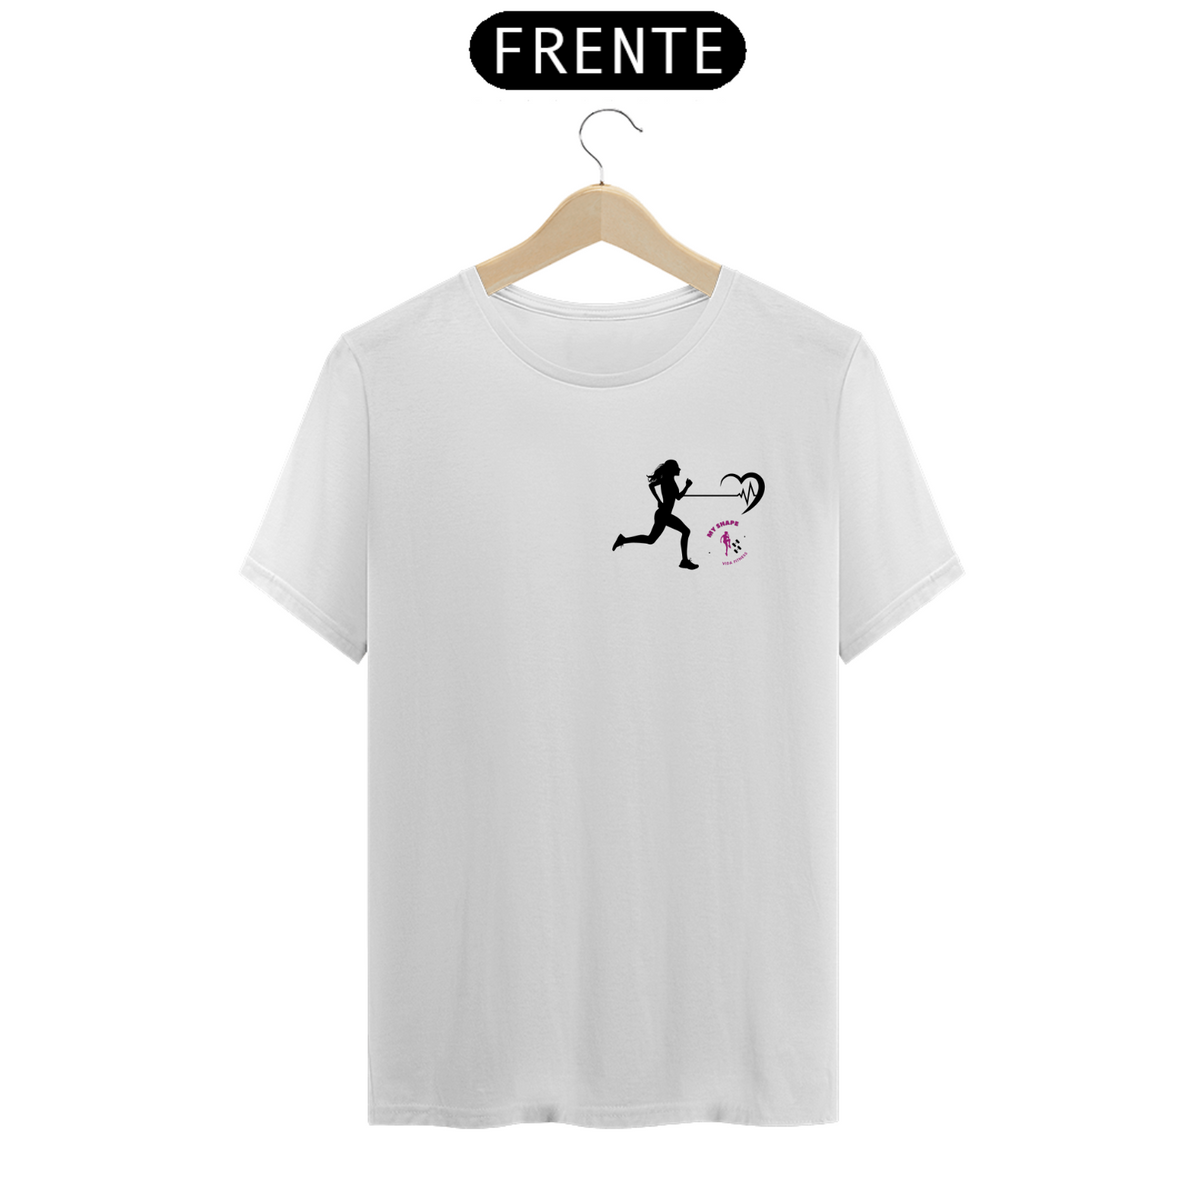 Nome do produto: T-shirt Algodão feminina Cardio branca, rosa e cinza